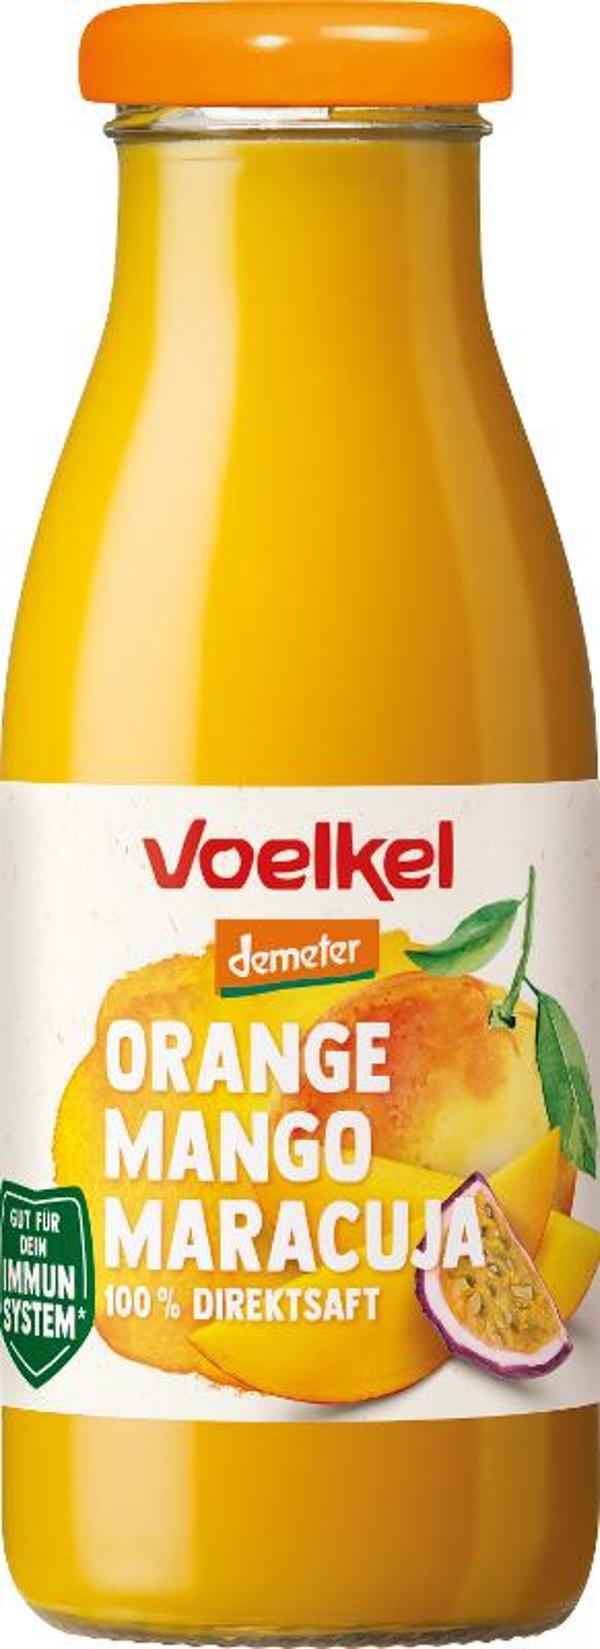 Produktfoto zu fair to go Orange Mango Maracuja